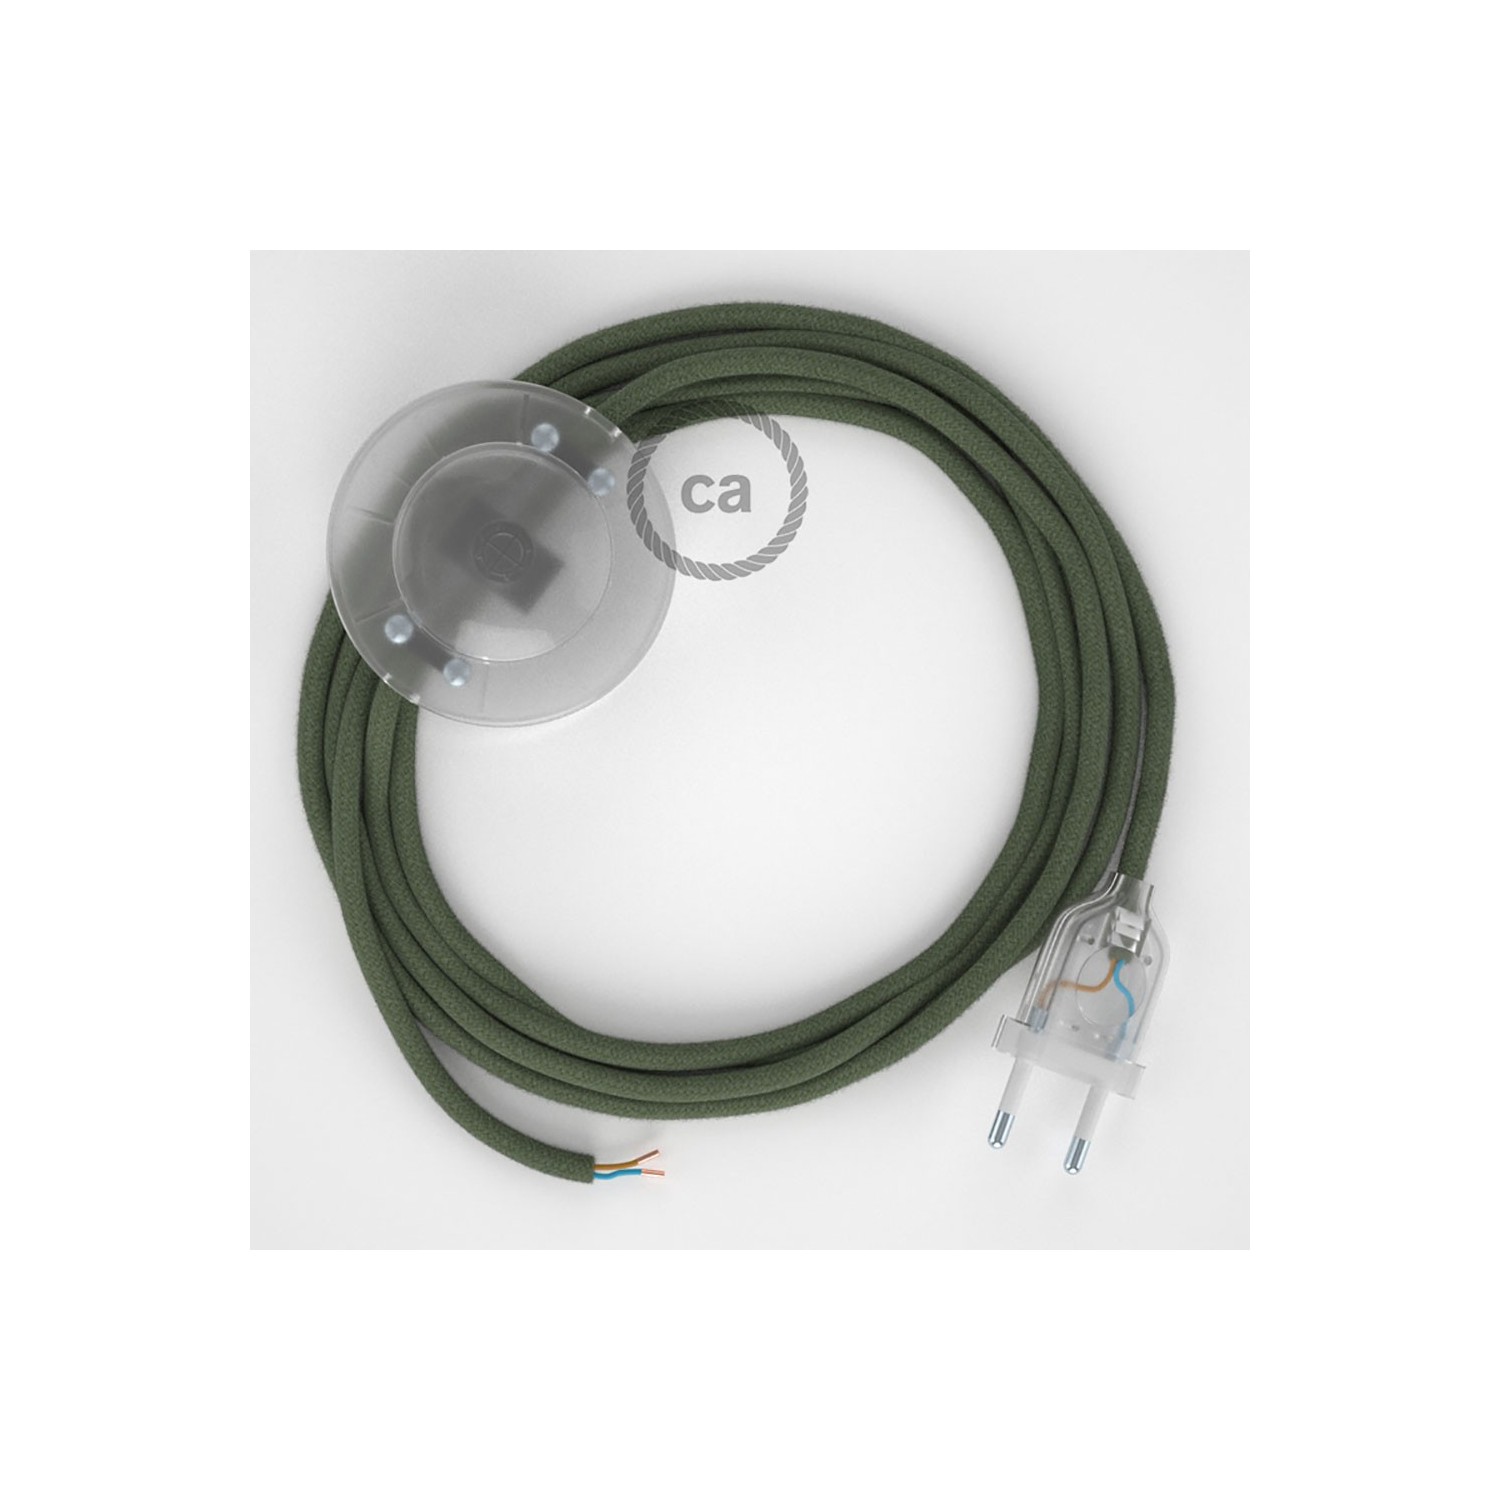 Cordon pour lampadaire, câble RC63 Coton Vert Gris 3 m. Choisissez la couleur de la fiche et de l'interrupteur!